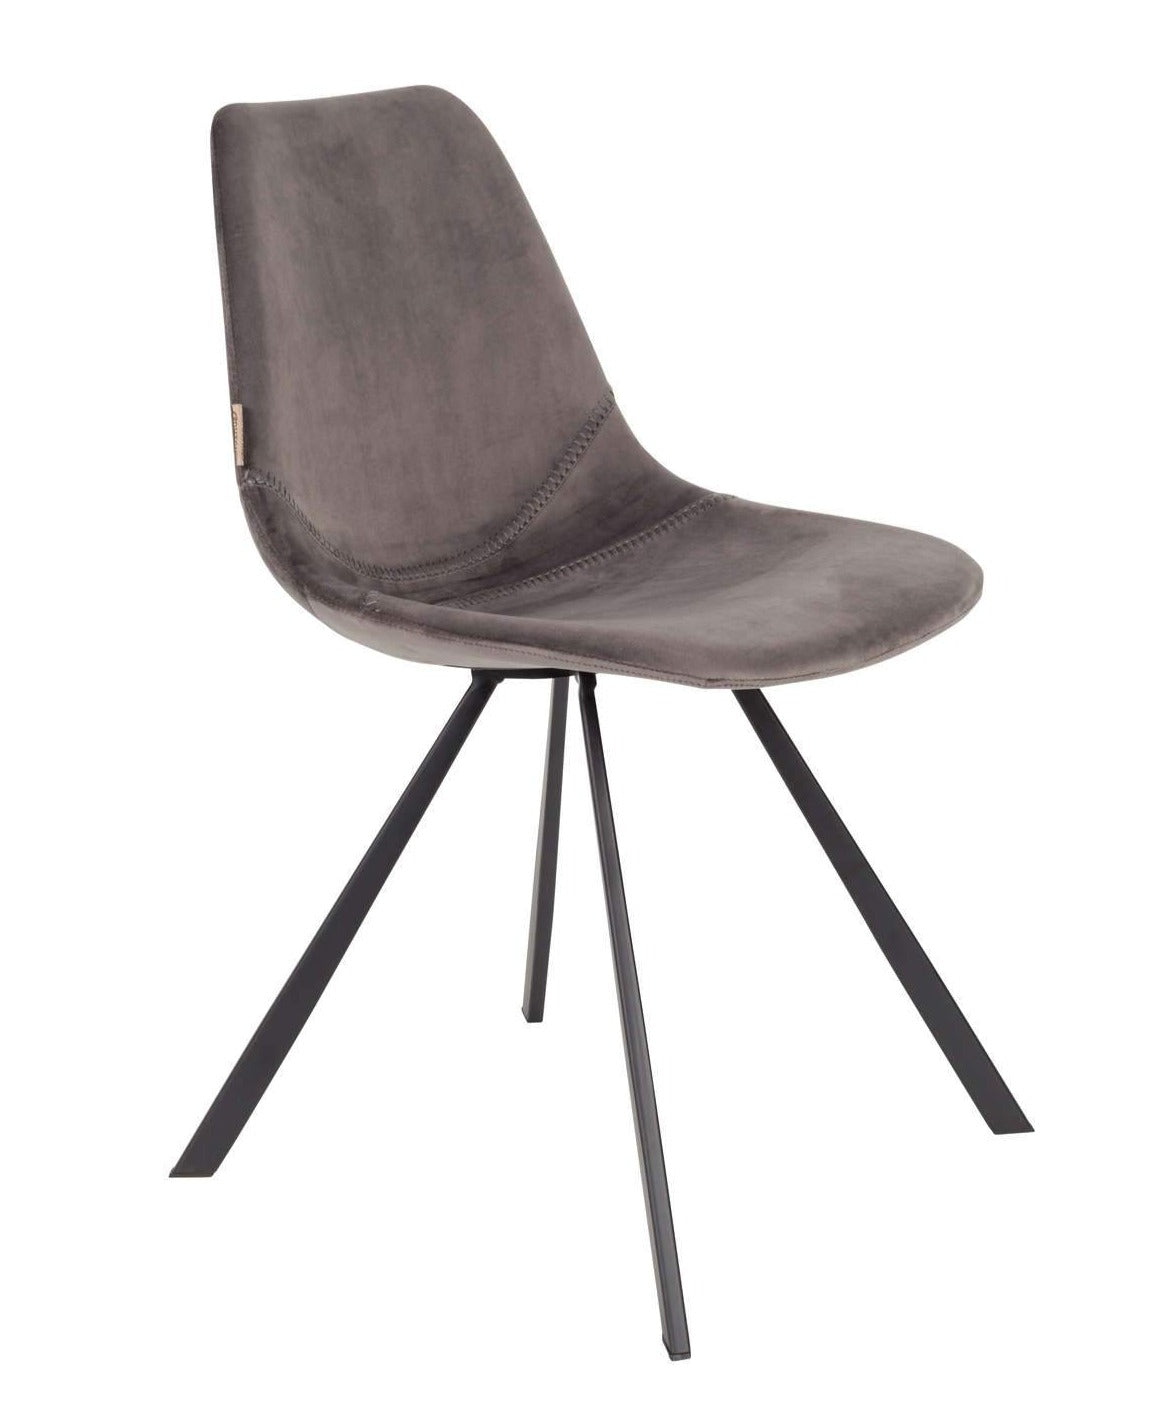 FRANKY VELVET chair grey, Dutchbone, Eye on Design